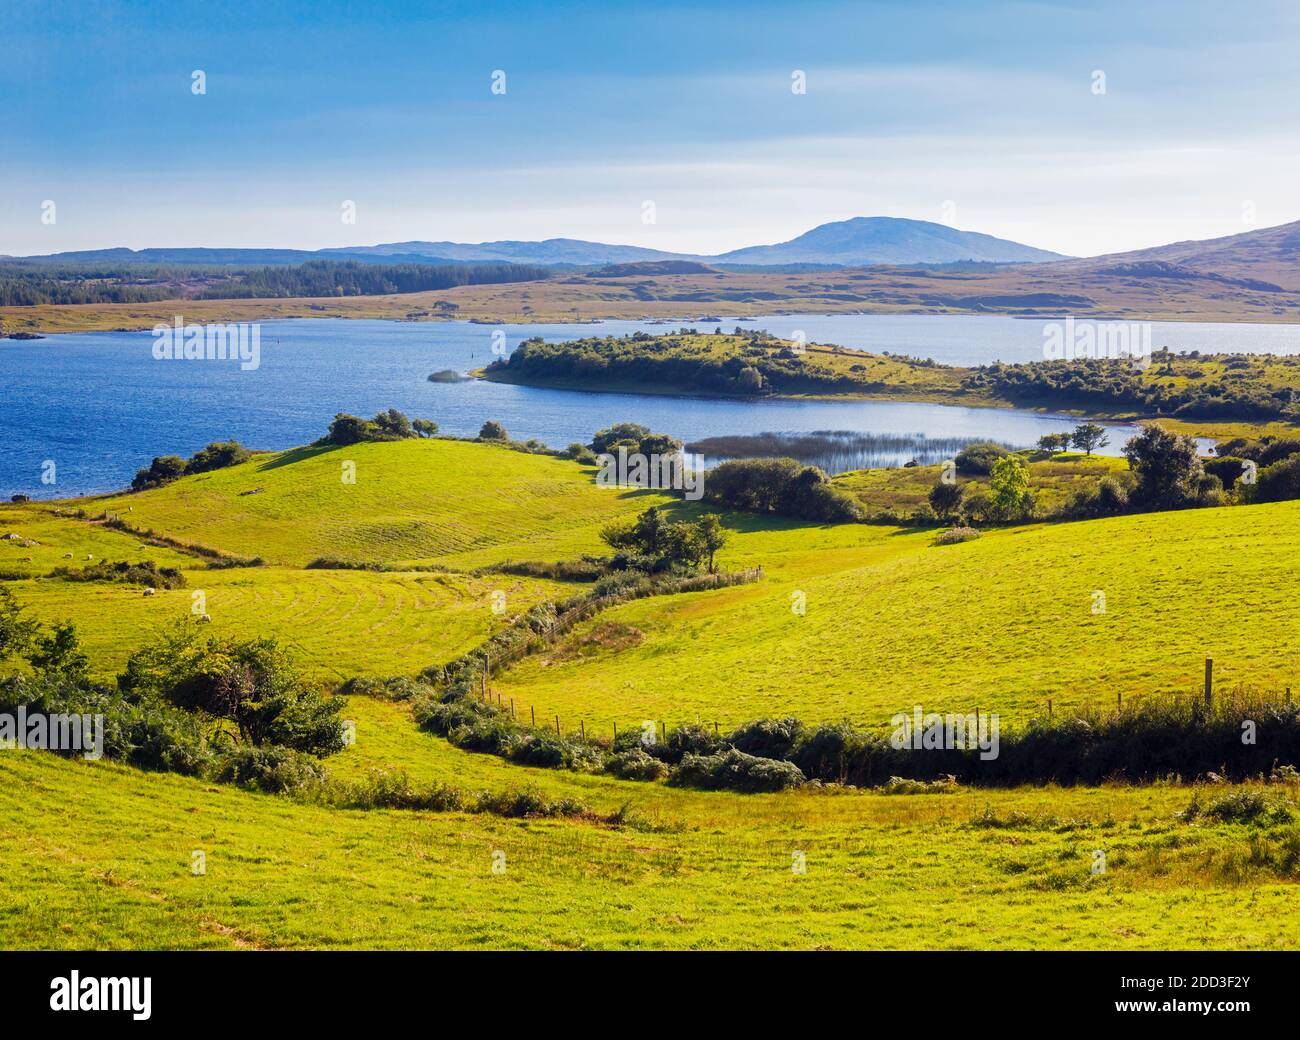 Campagne menant à Lough Corrib, Connemara, comté de Galway, République d'Irlande. Eire. Lough Corrib est le plus grand lac de la République d'Irlande. Banque D'Images